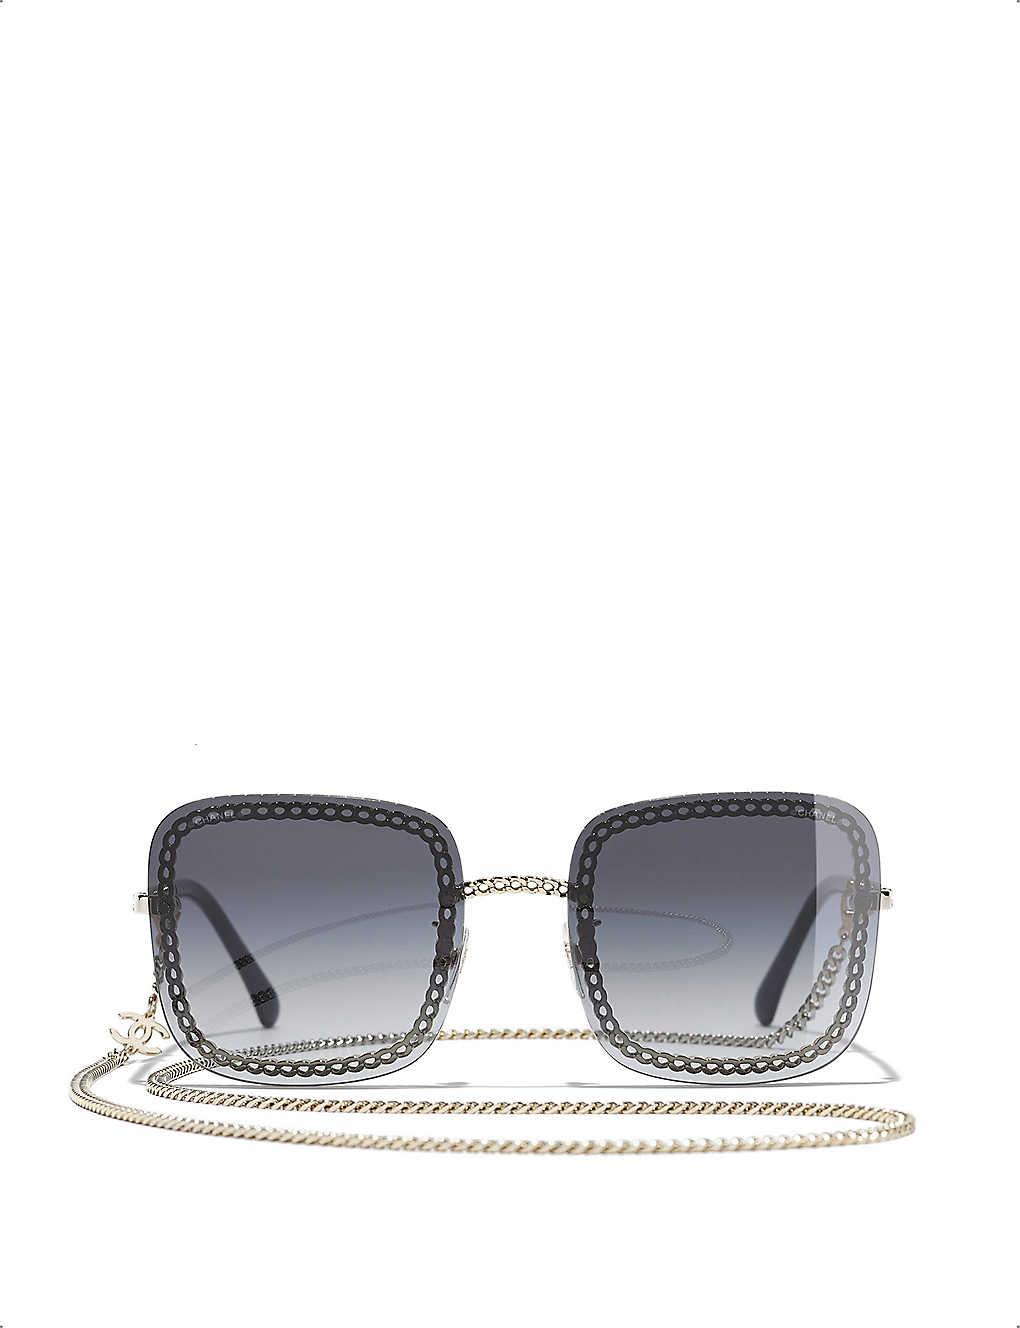 Chanel Square Sunglasses in Blue